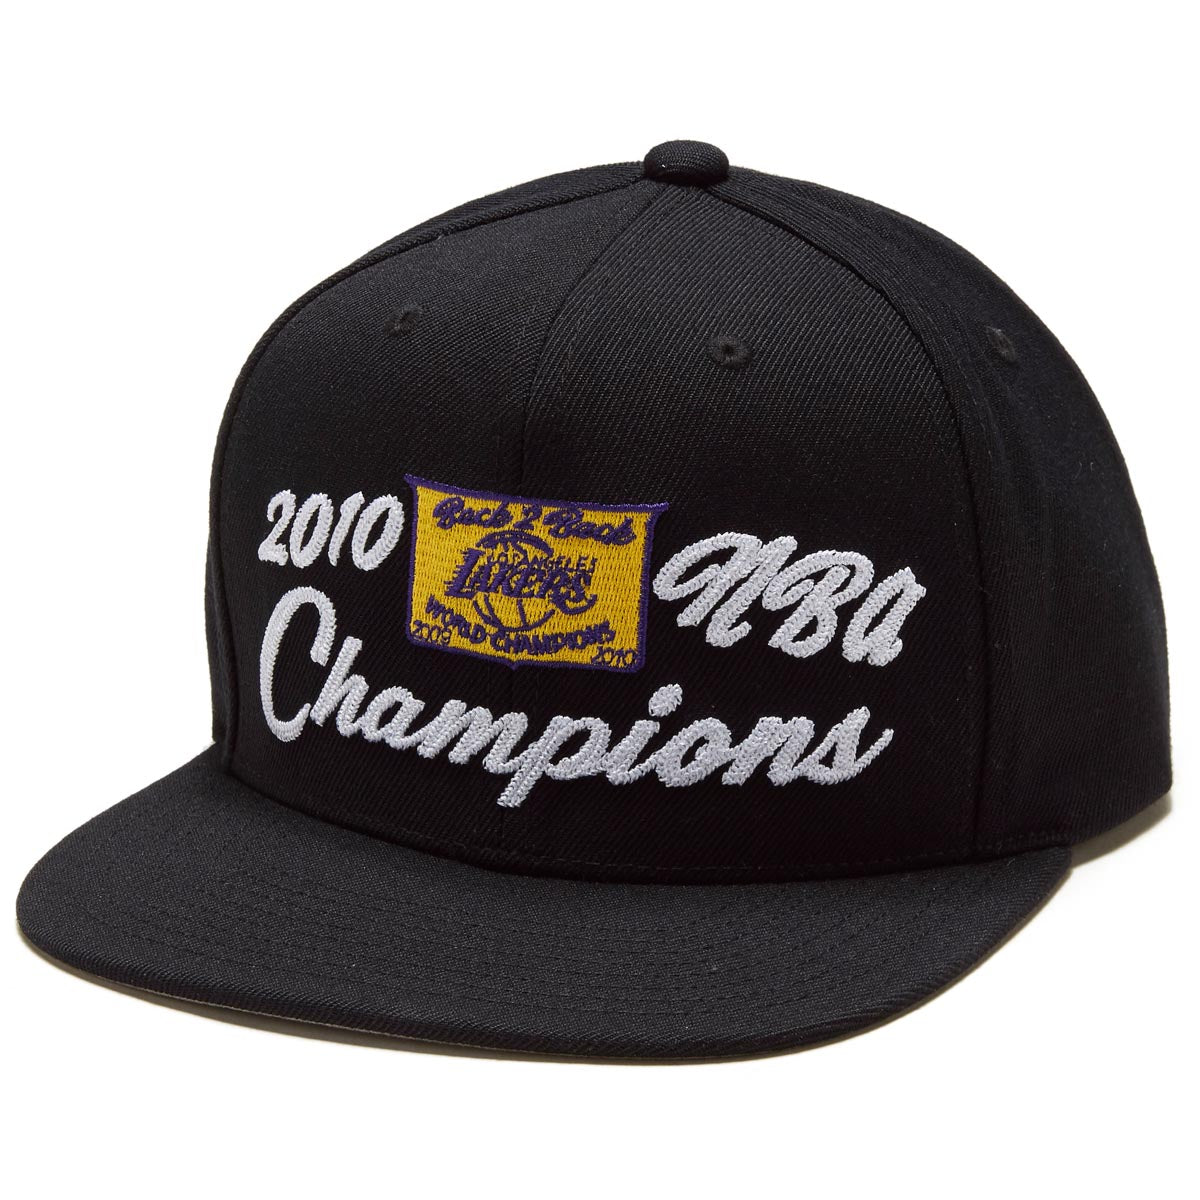 Mitchell & Ness x NBA 10 Champs Snapback Hat - Black image 1